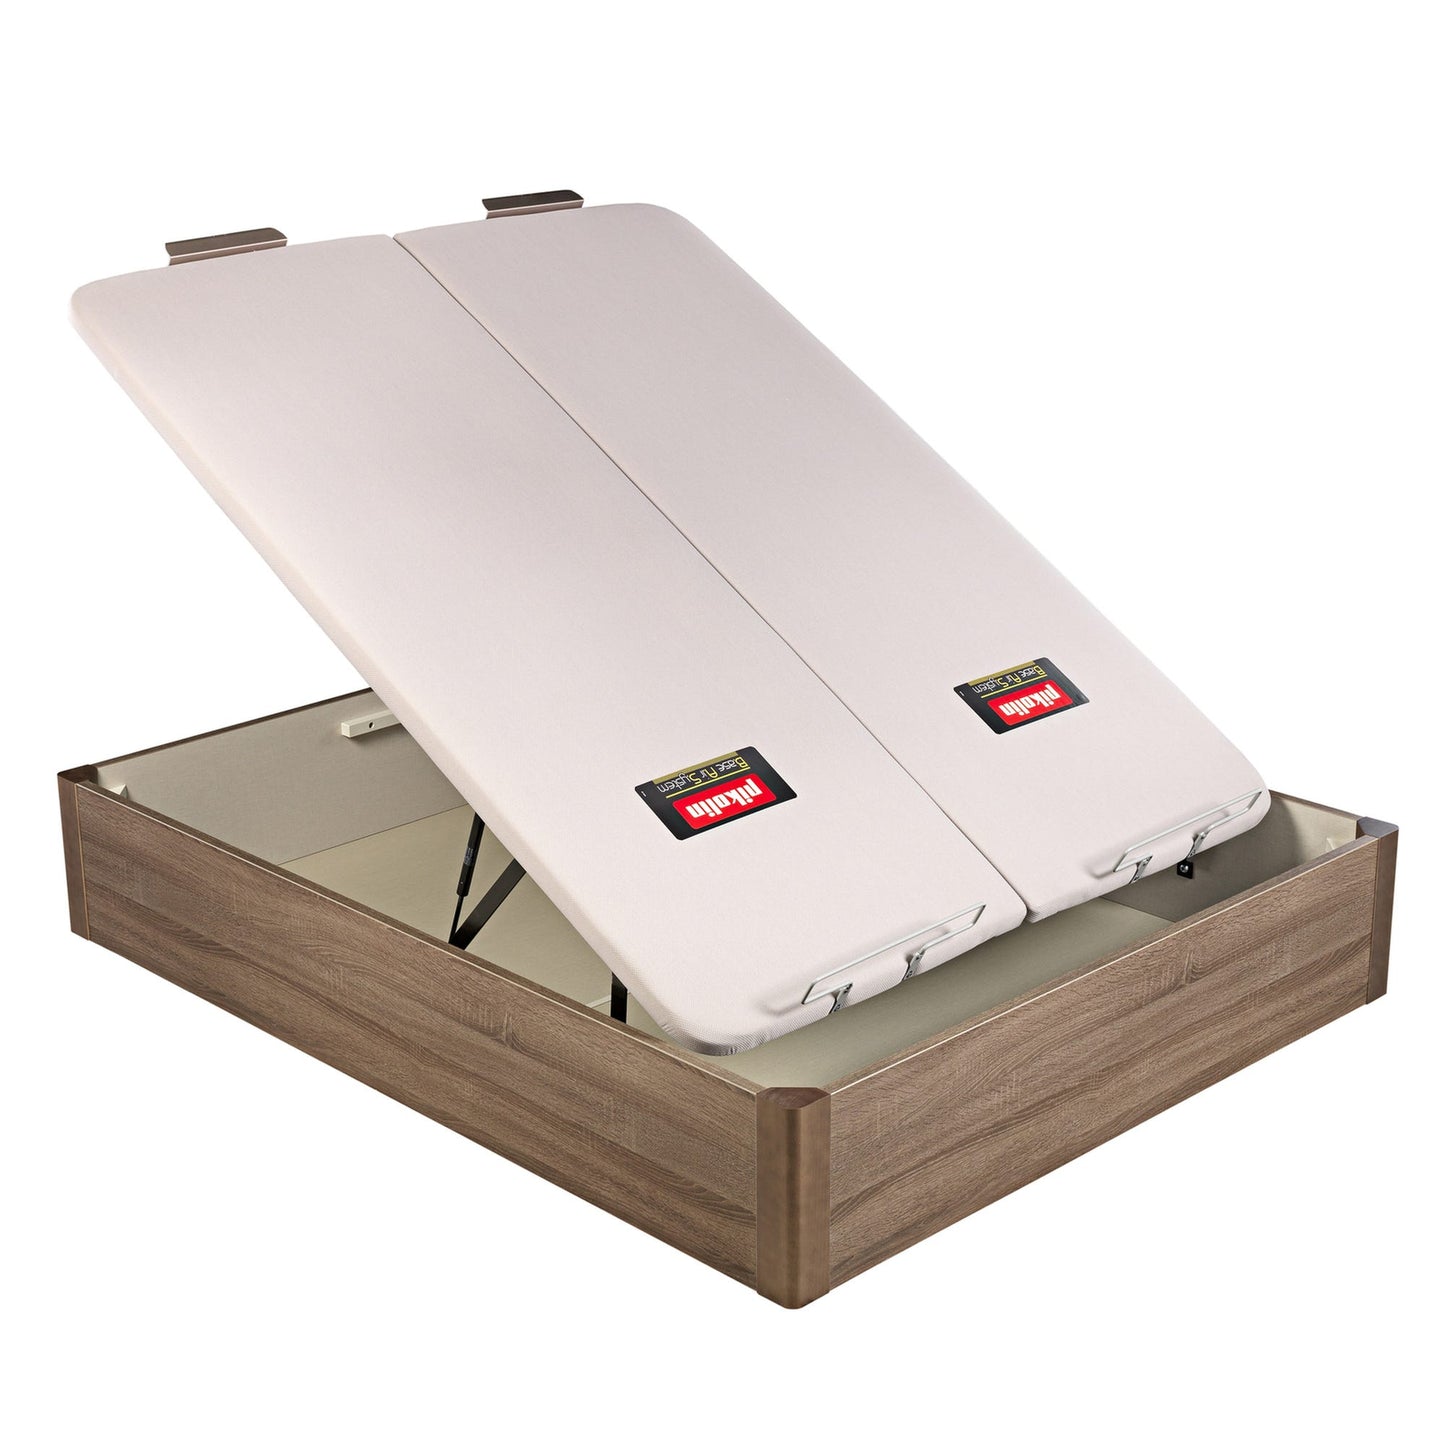 Canapé abatible de madera de tapa doble de color roble - DESIGN - 150x182